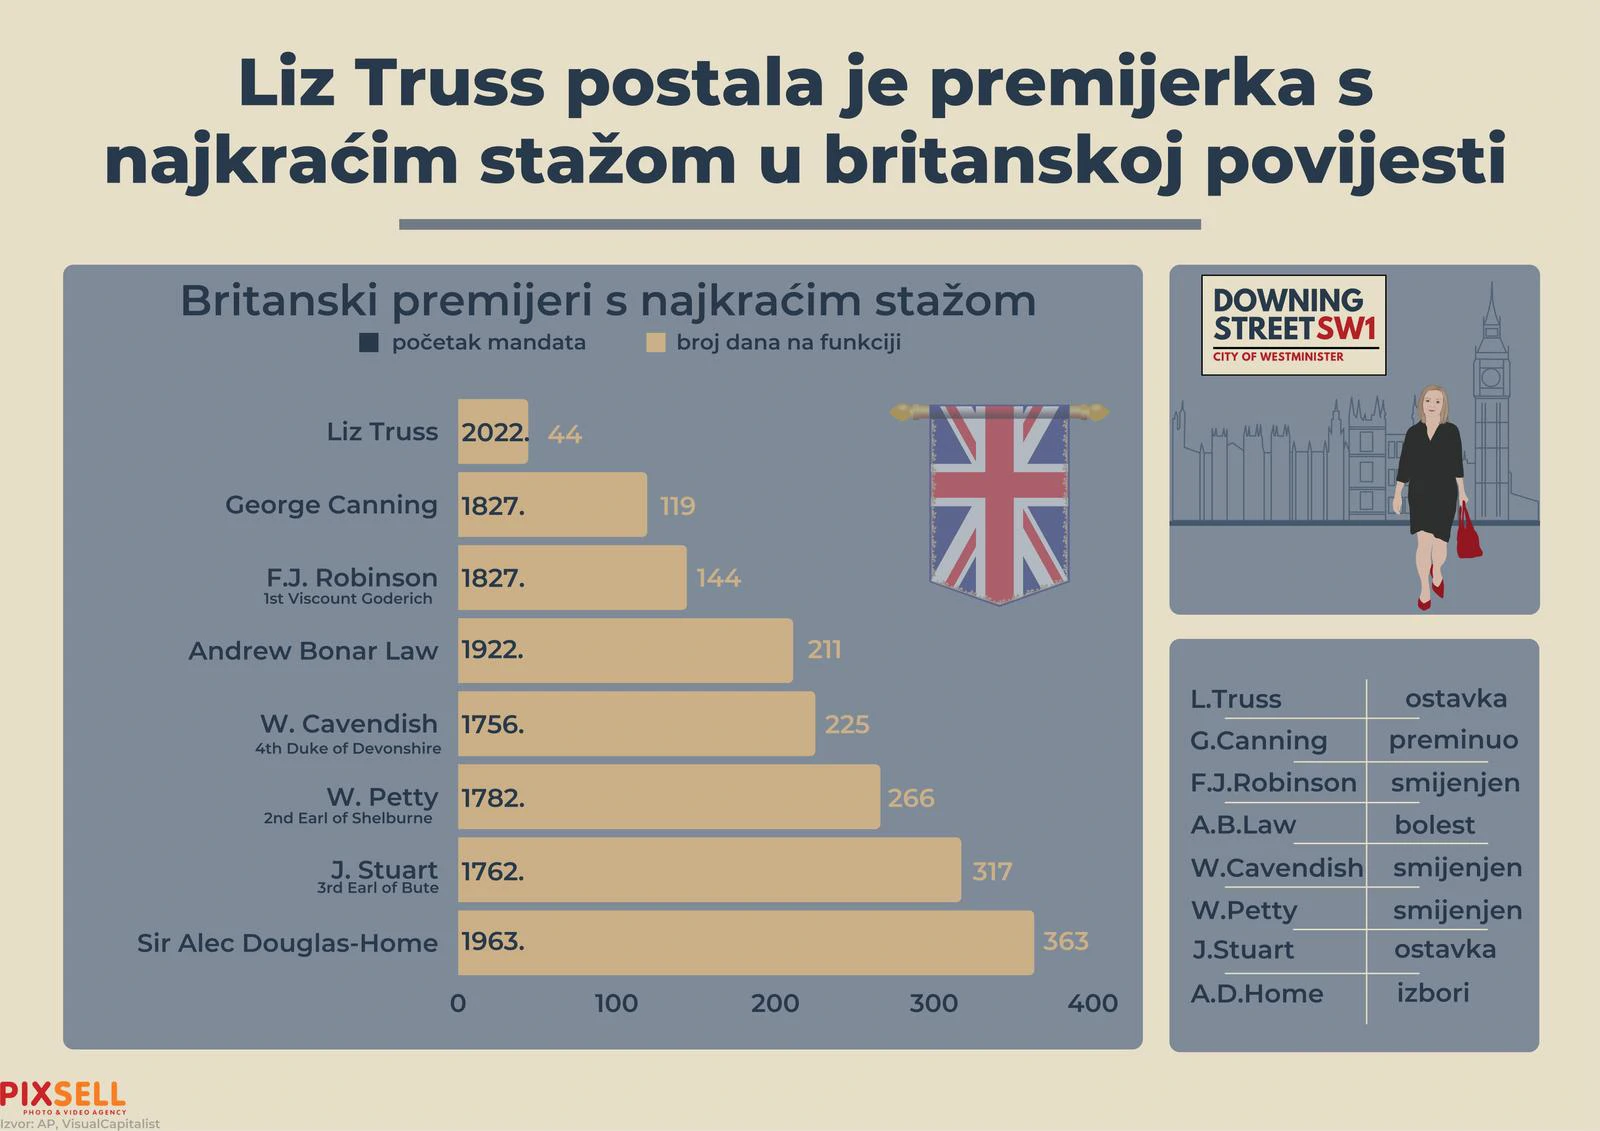 Liz Truss, premijerka s najkraćim stažom u britanskoj povijesti